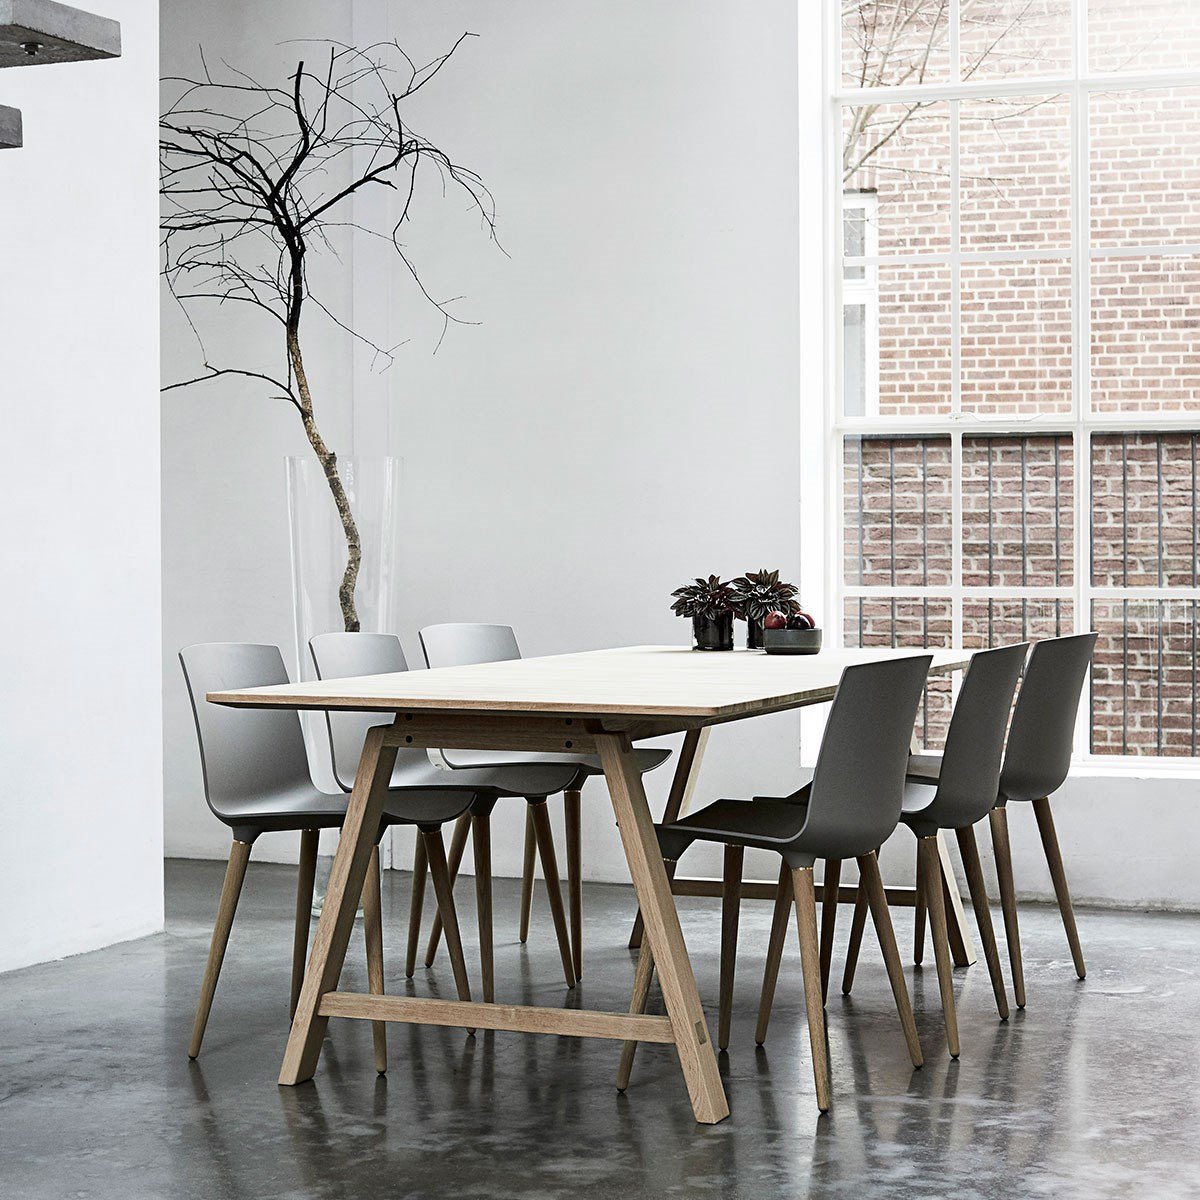 Andersen Furniture T1 Udvidelig tabel, hvid laminat, sæbe eg, 220 cm